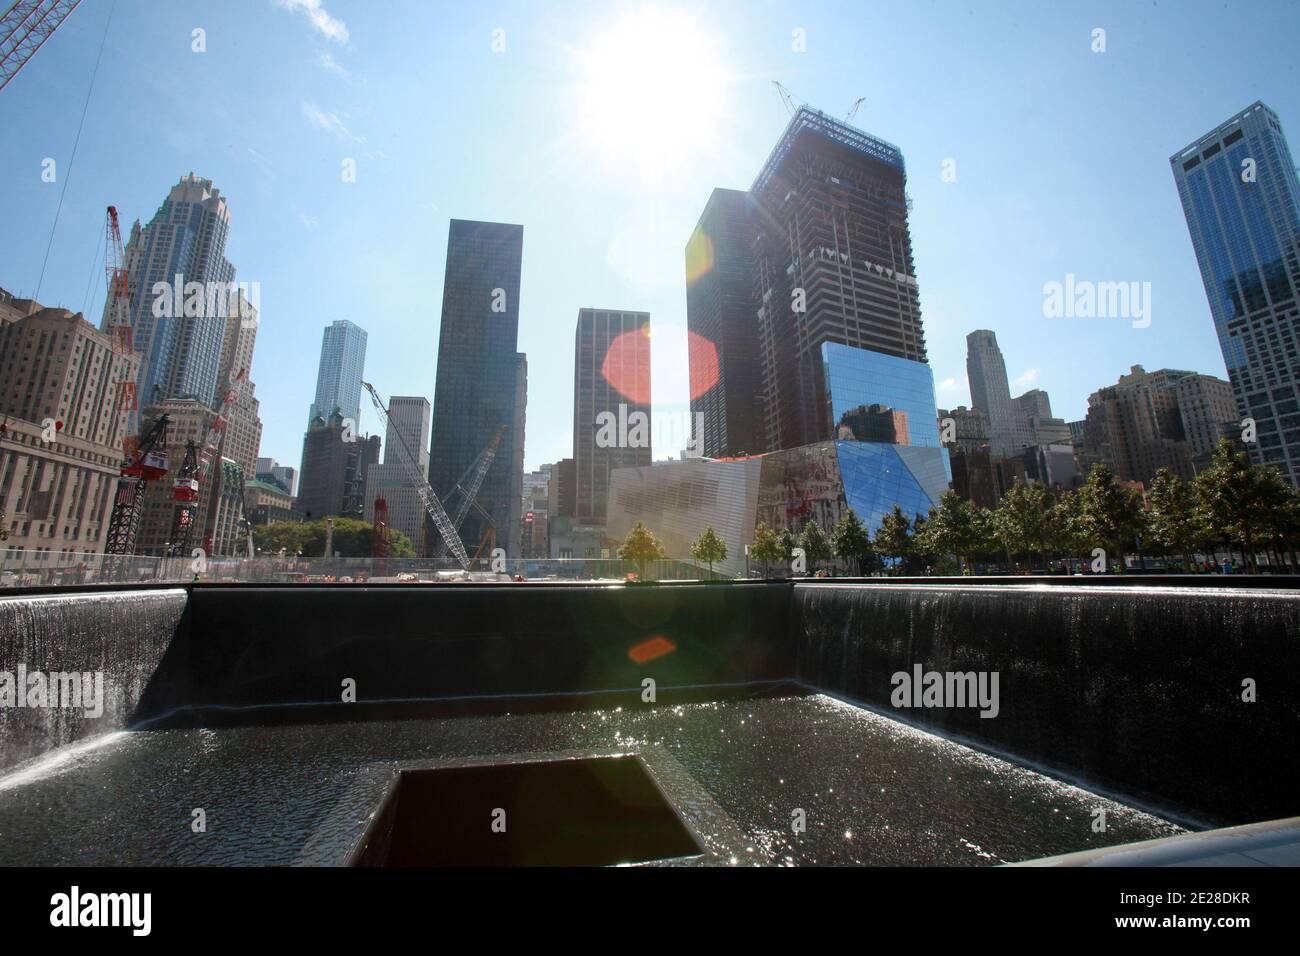 Due giorni prima del 10° anniversario degli attacchi del 9/11, la sicurezza era pesante di fronte alla Freedom Tower presso il sito del World Trade Center a New York, NY, USA il 09 settembre 2011. Foto di ABACAPRESS.COM Foto Stock